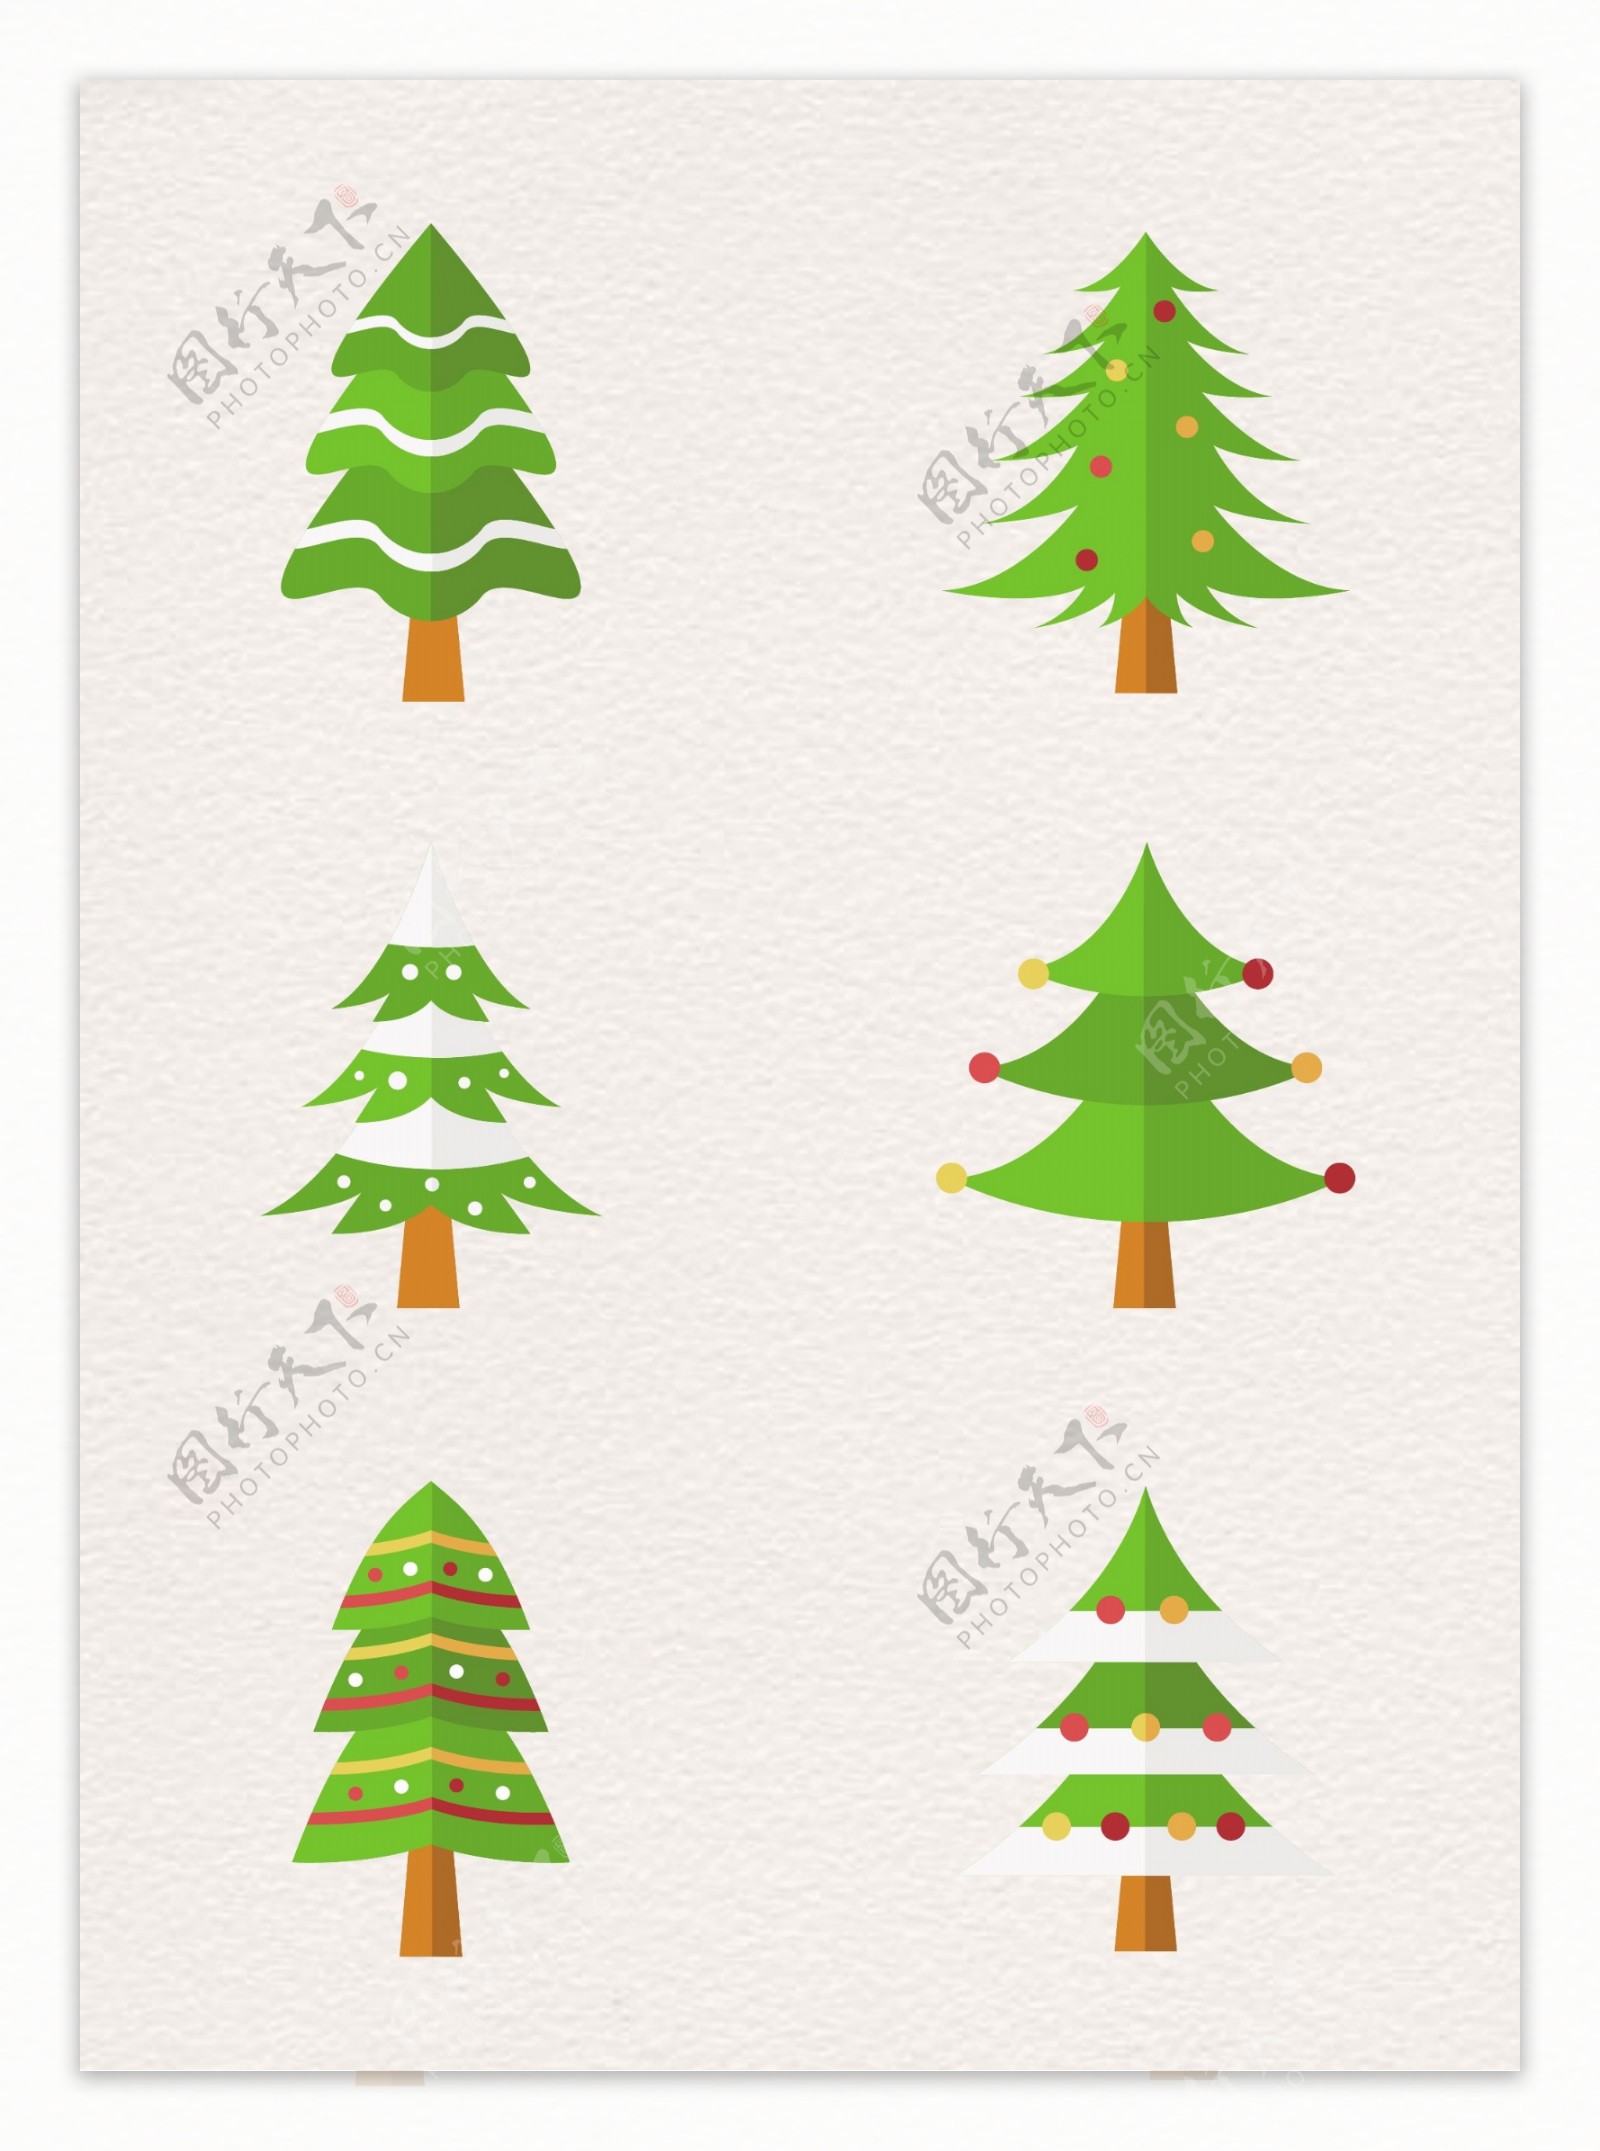 卡通圣诞树圣诞节树木设计